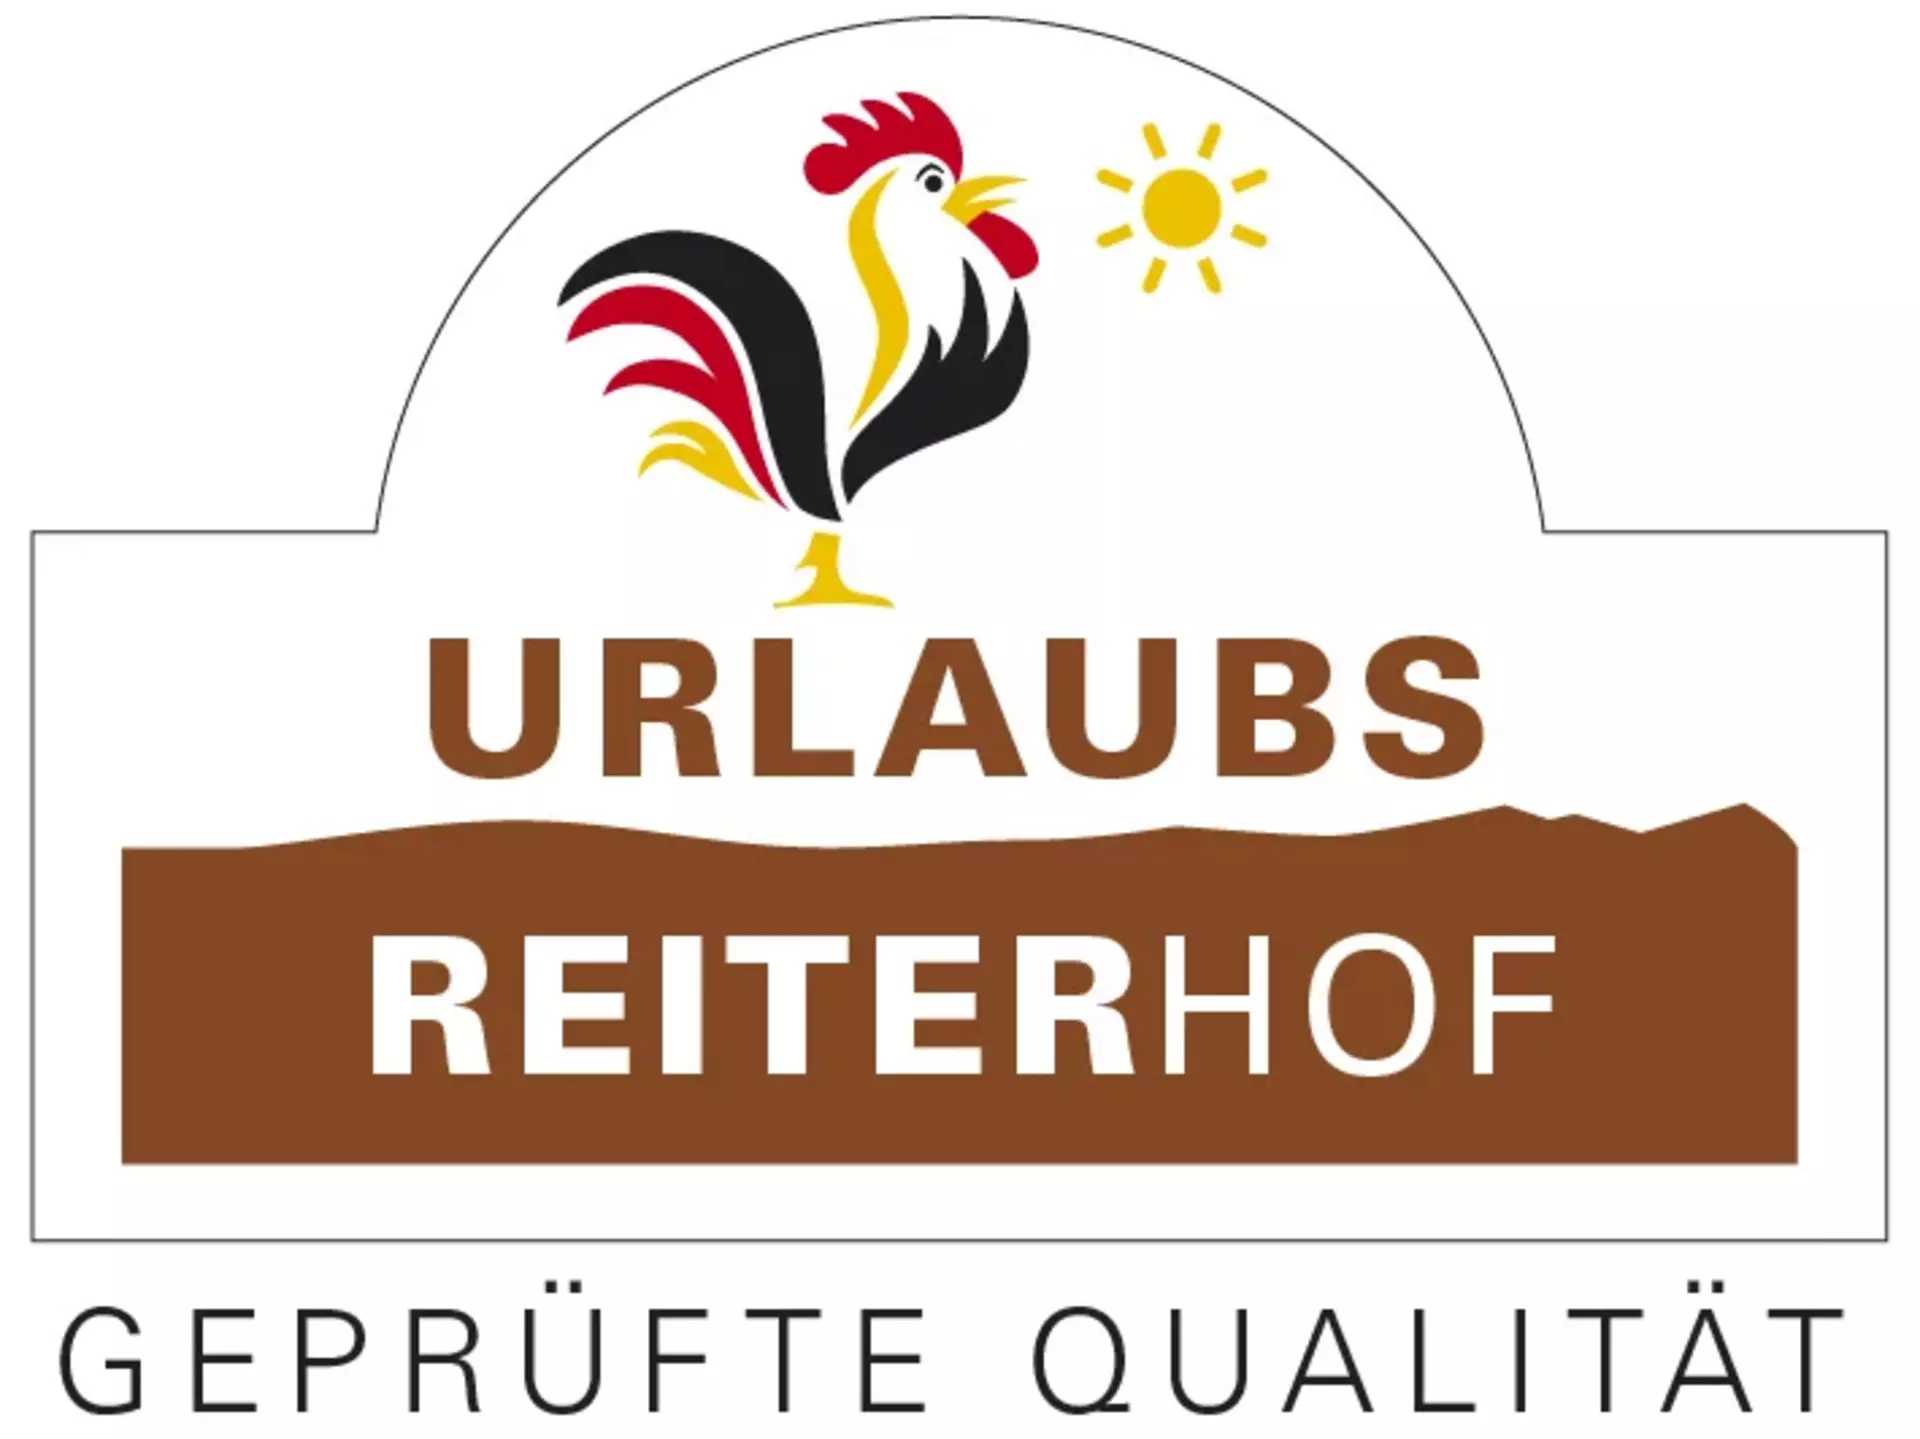 Gütesiegel "Qualitätsgeprüfter UrlaubsReiterhof" der Bundesarbeitsgemeinschaft für Urlaub auf dem Bauernhof und Landtourismus in Deutschland e. V.
